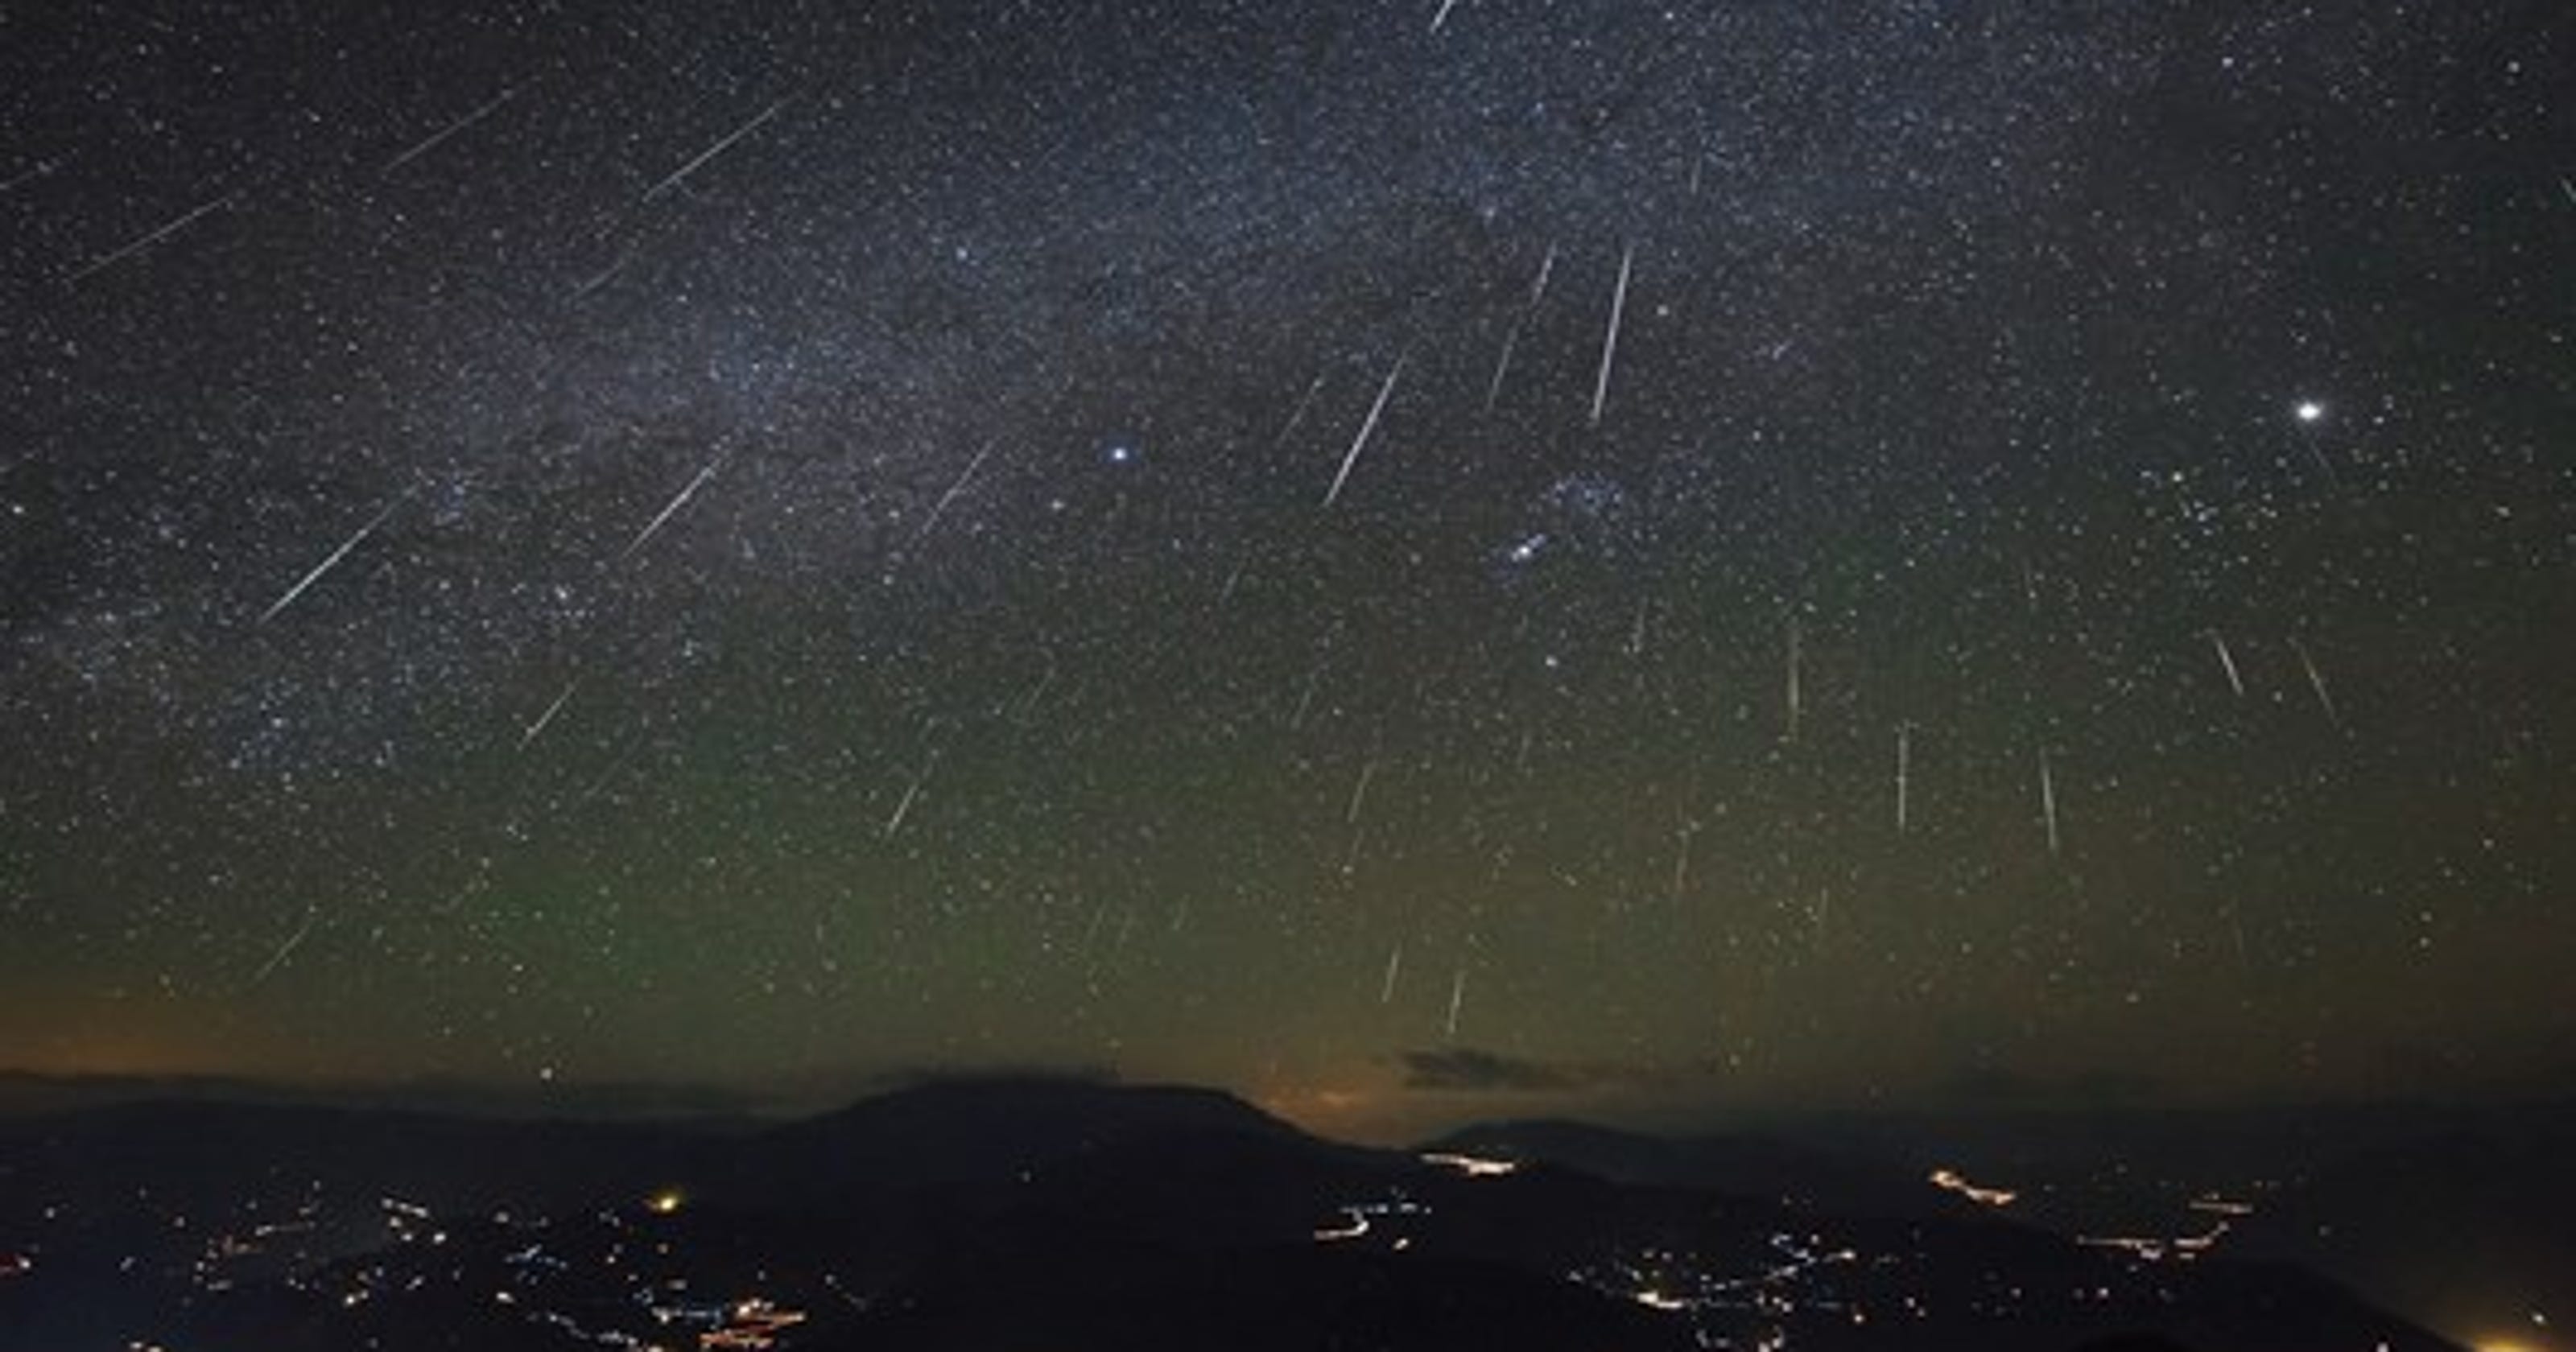 Delta Aquariid meteor shower will light up the night sky on Sunday